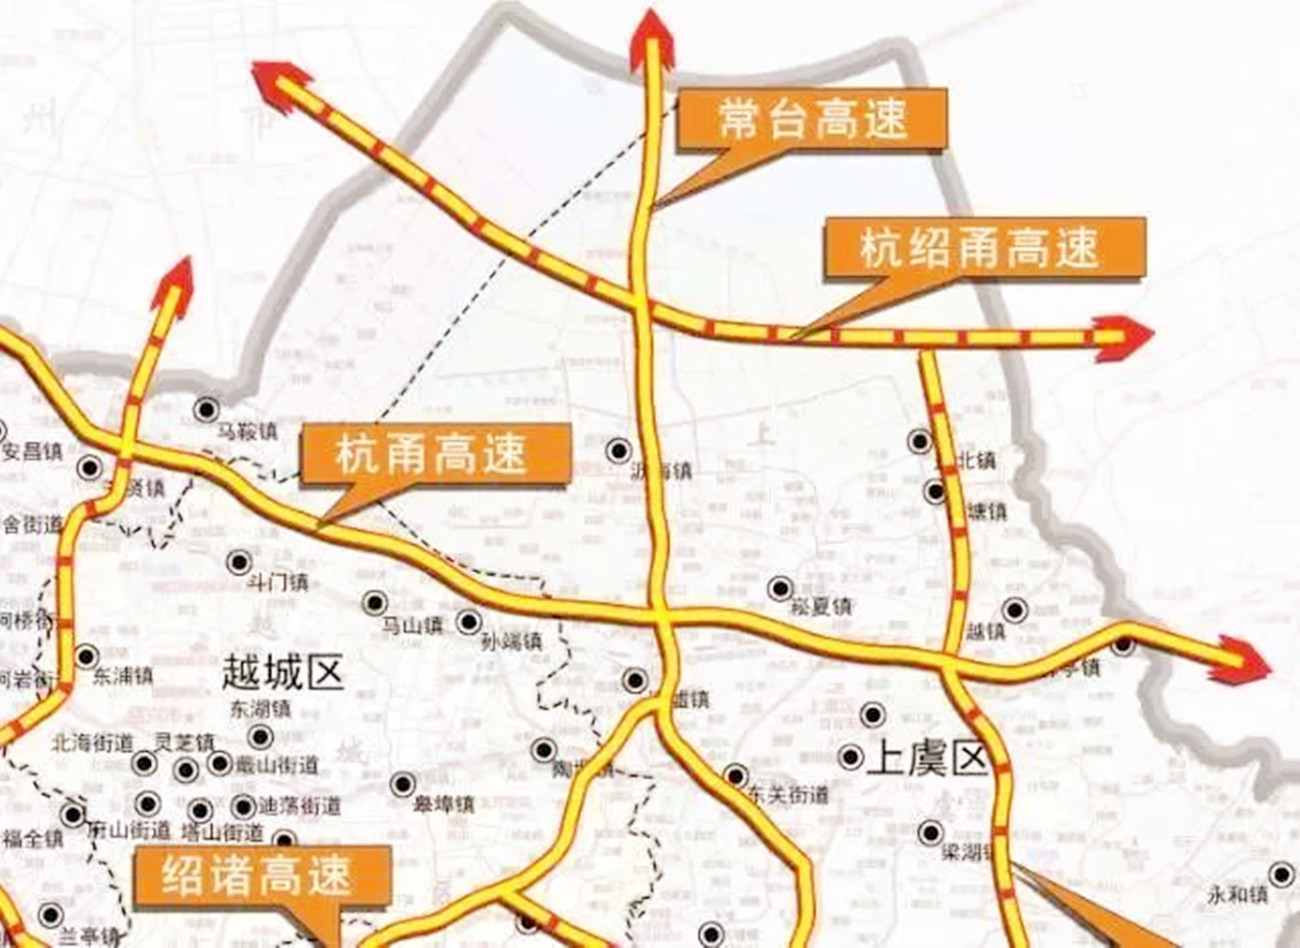 宁波,超级高速公路,杭绍甬高速,发展,杭州